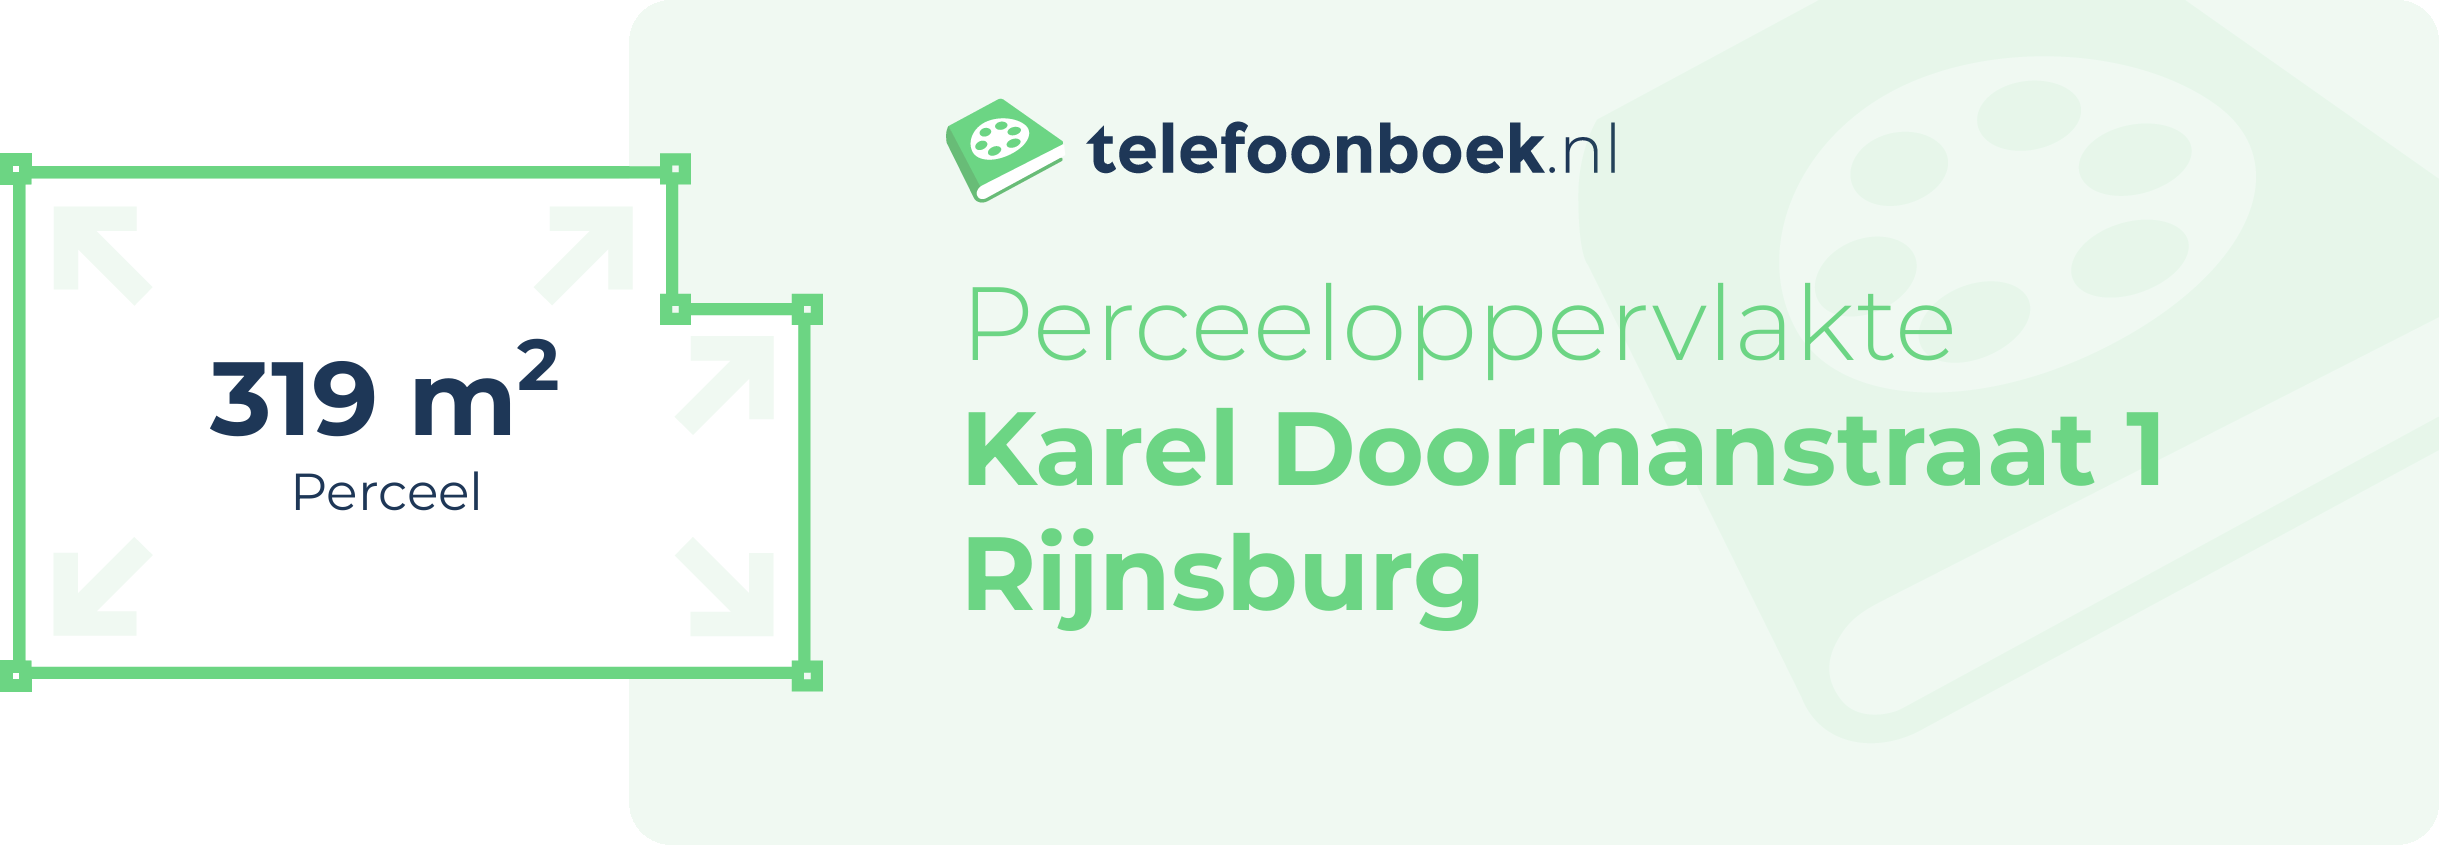 Perceeloppervlakte Karel Doormanstraat 1 Rijnsburg